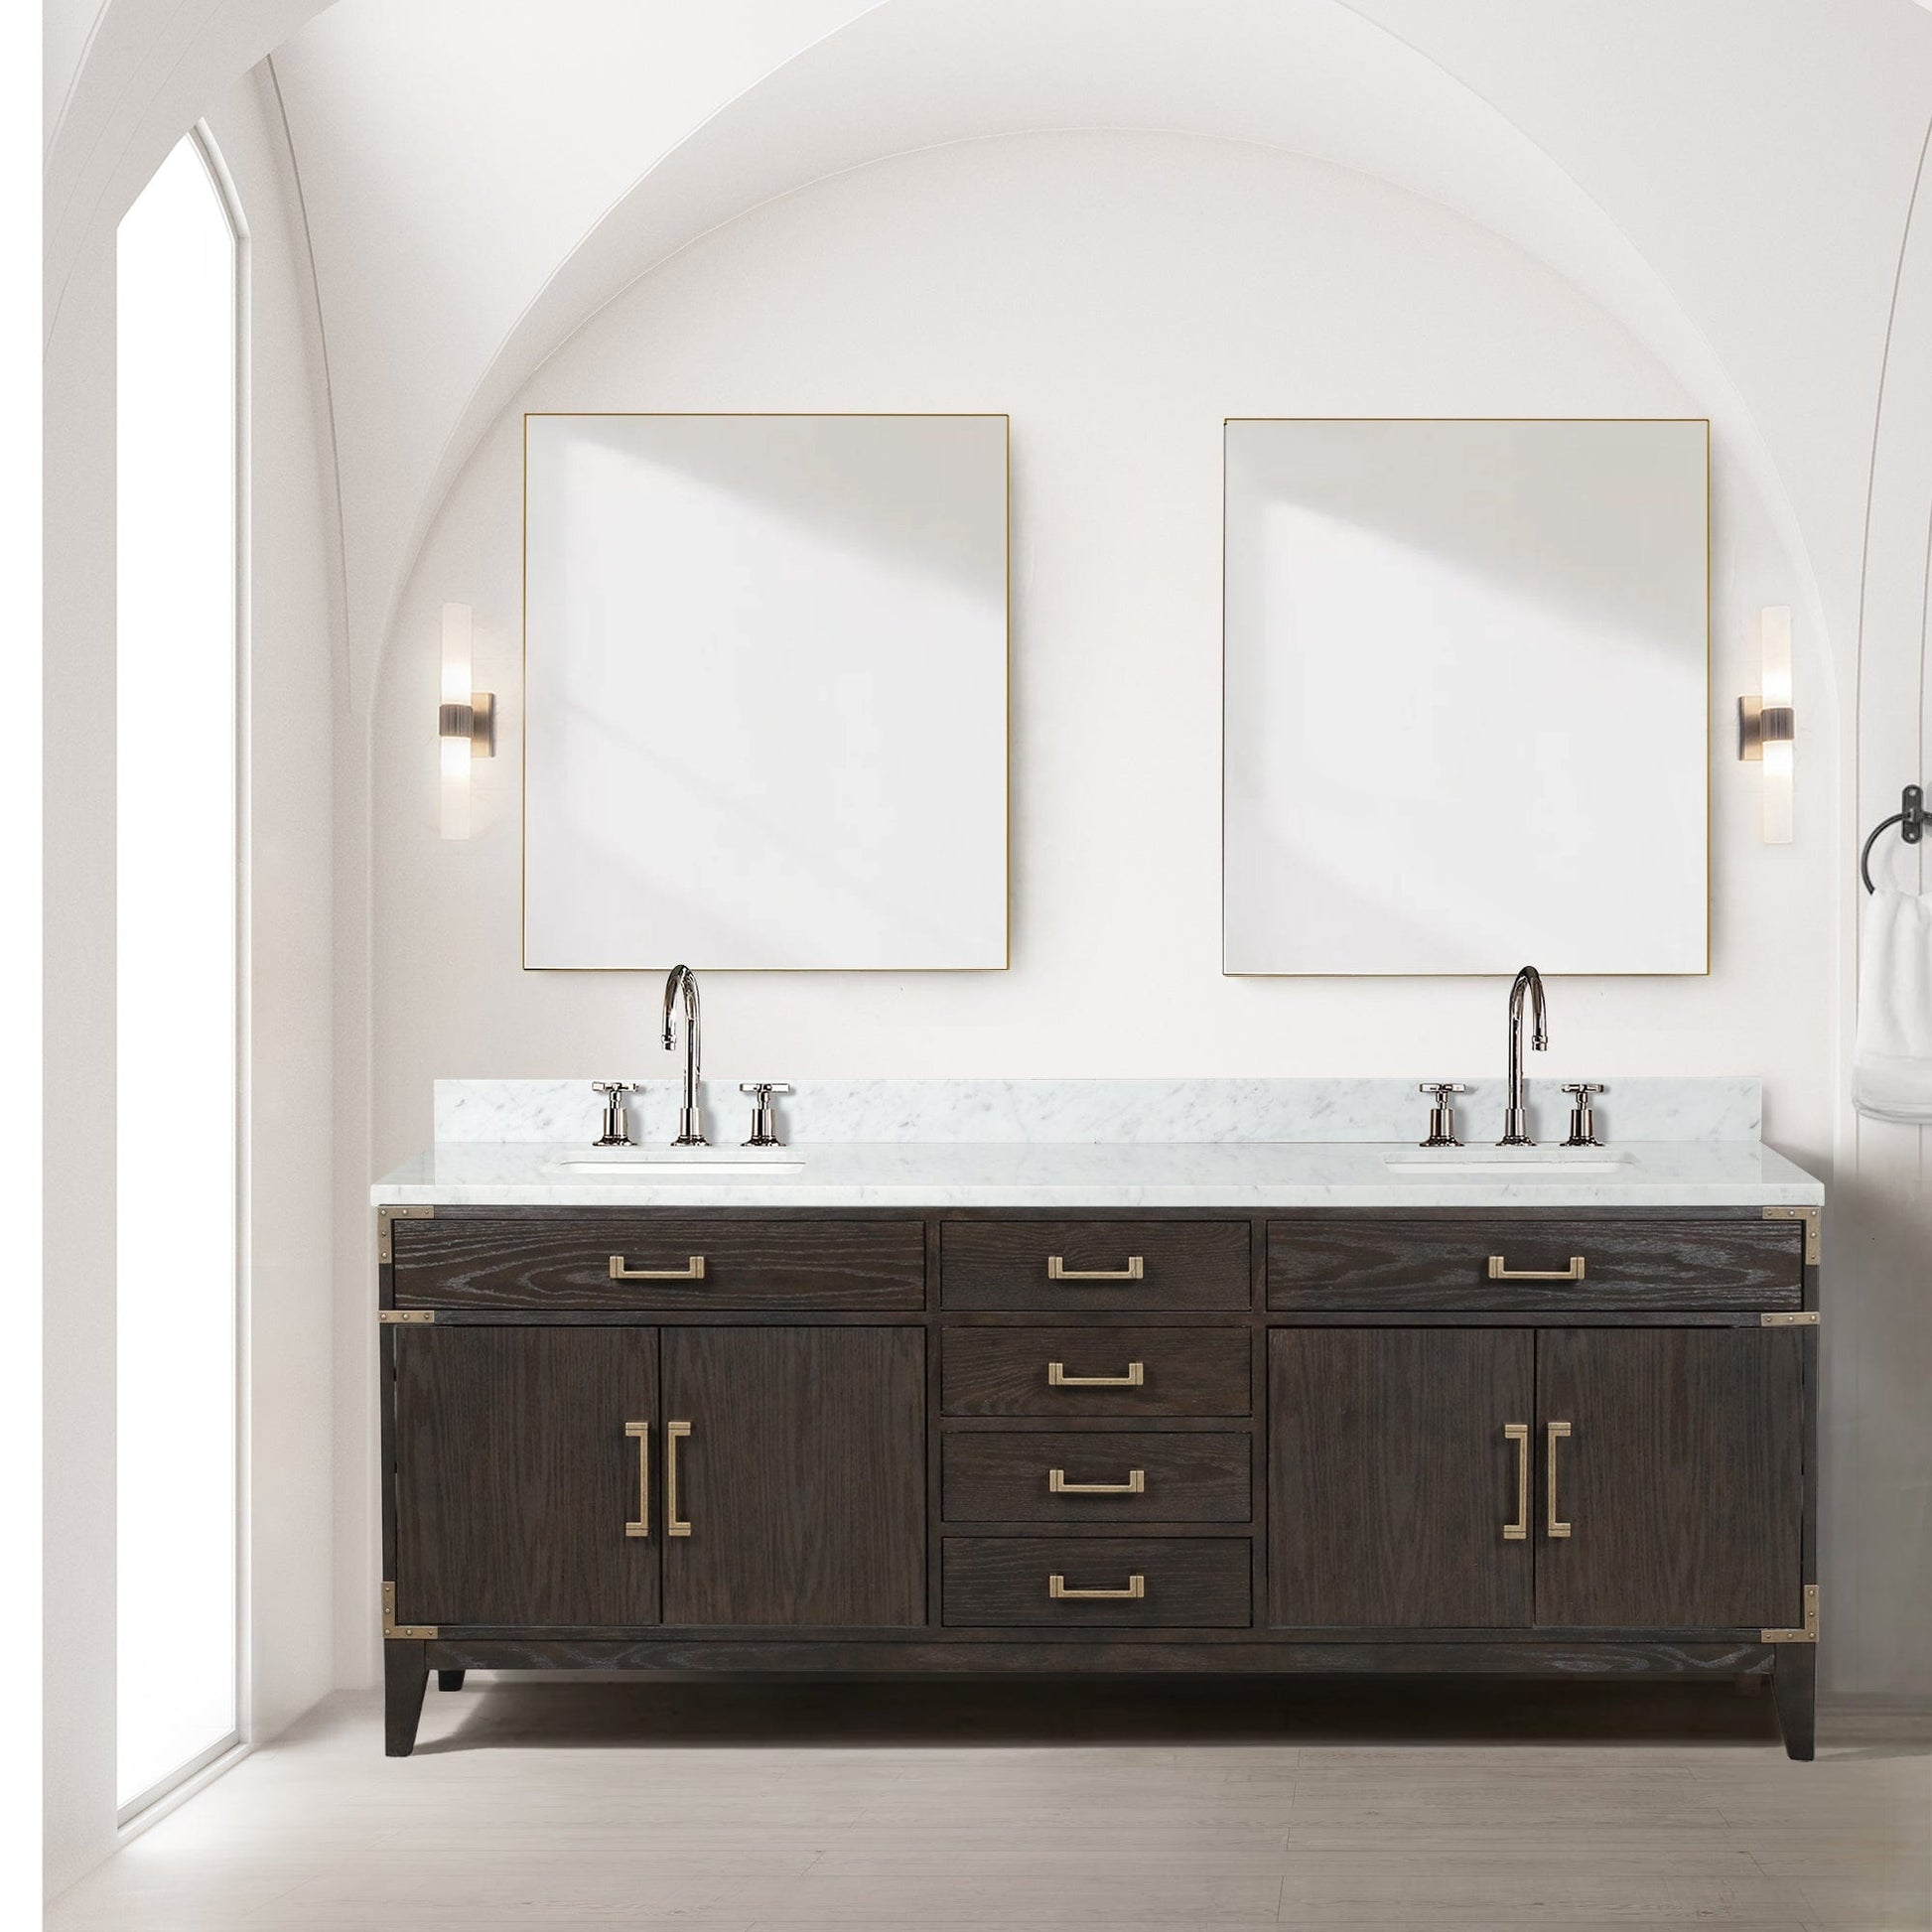 Lexora Bathroom Vanity Brown Oak / No Faucet / No Mirror Laurel 84" x 22" Double Bath Vanity